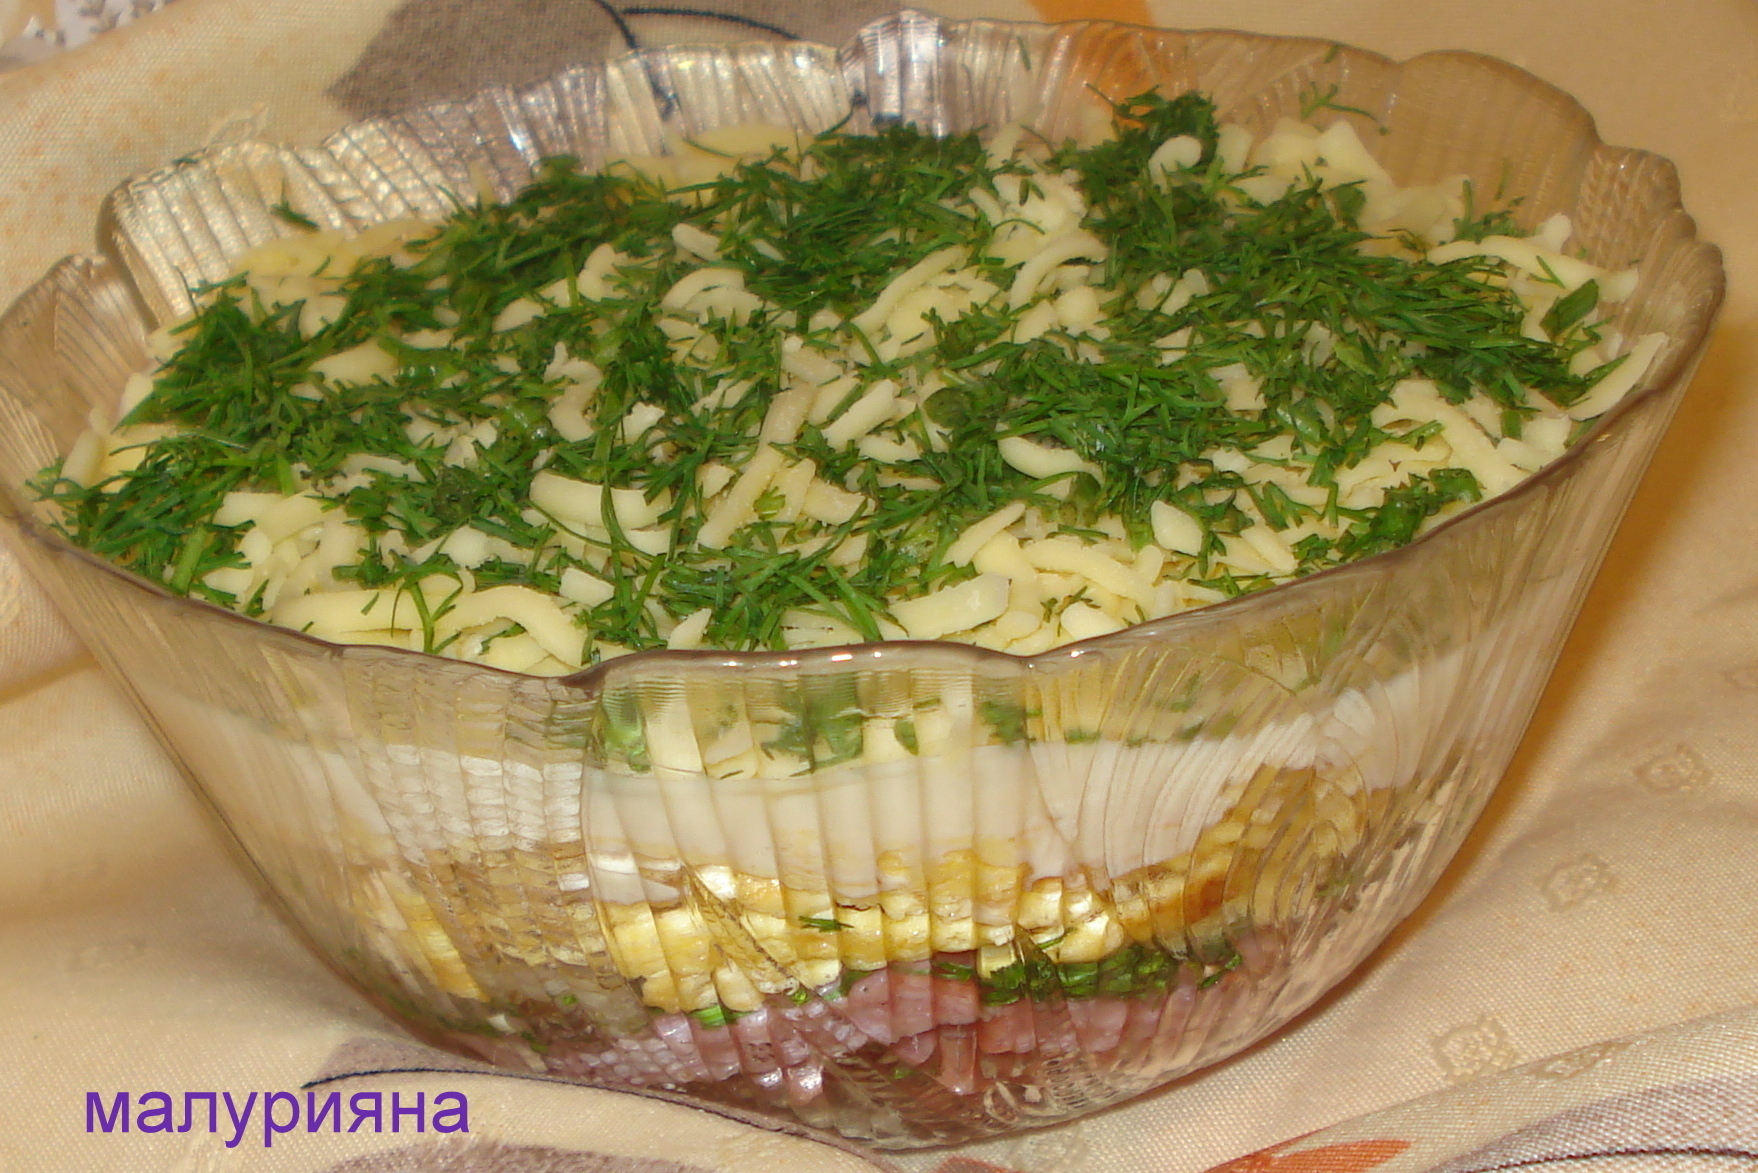 Салат «Белые ночи» с ананасом и сельдереем — рецепт с фото | Рецепт | Еда, Настоящая еда, Кулинария